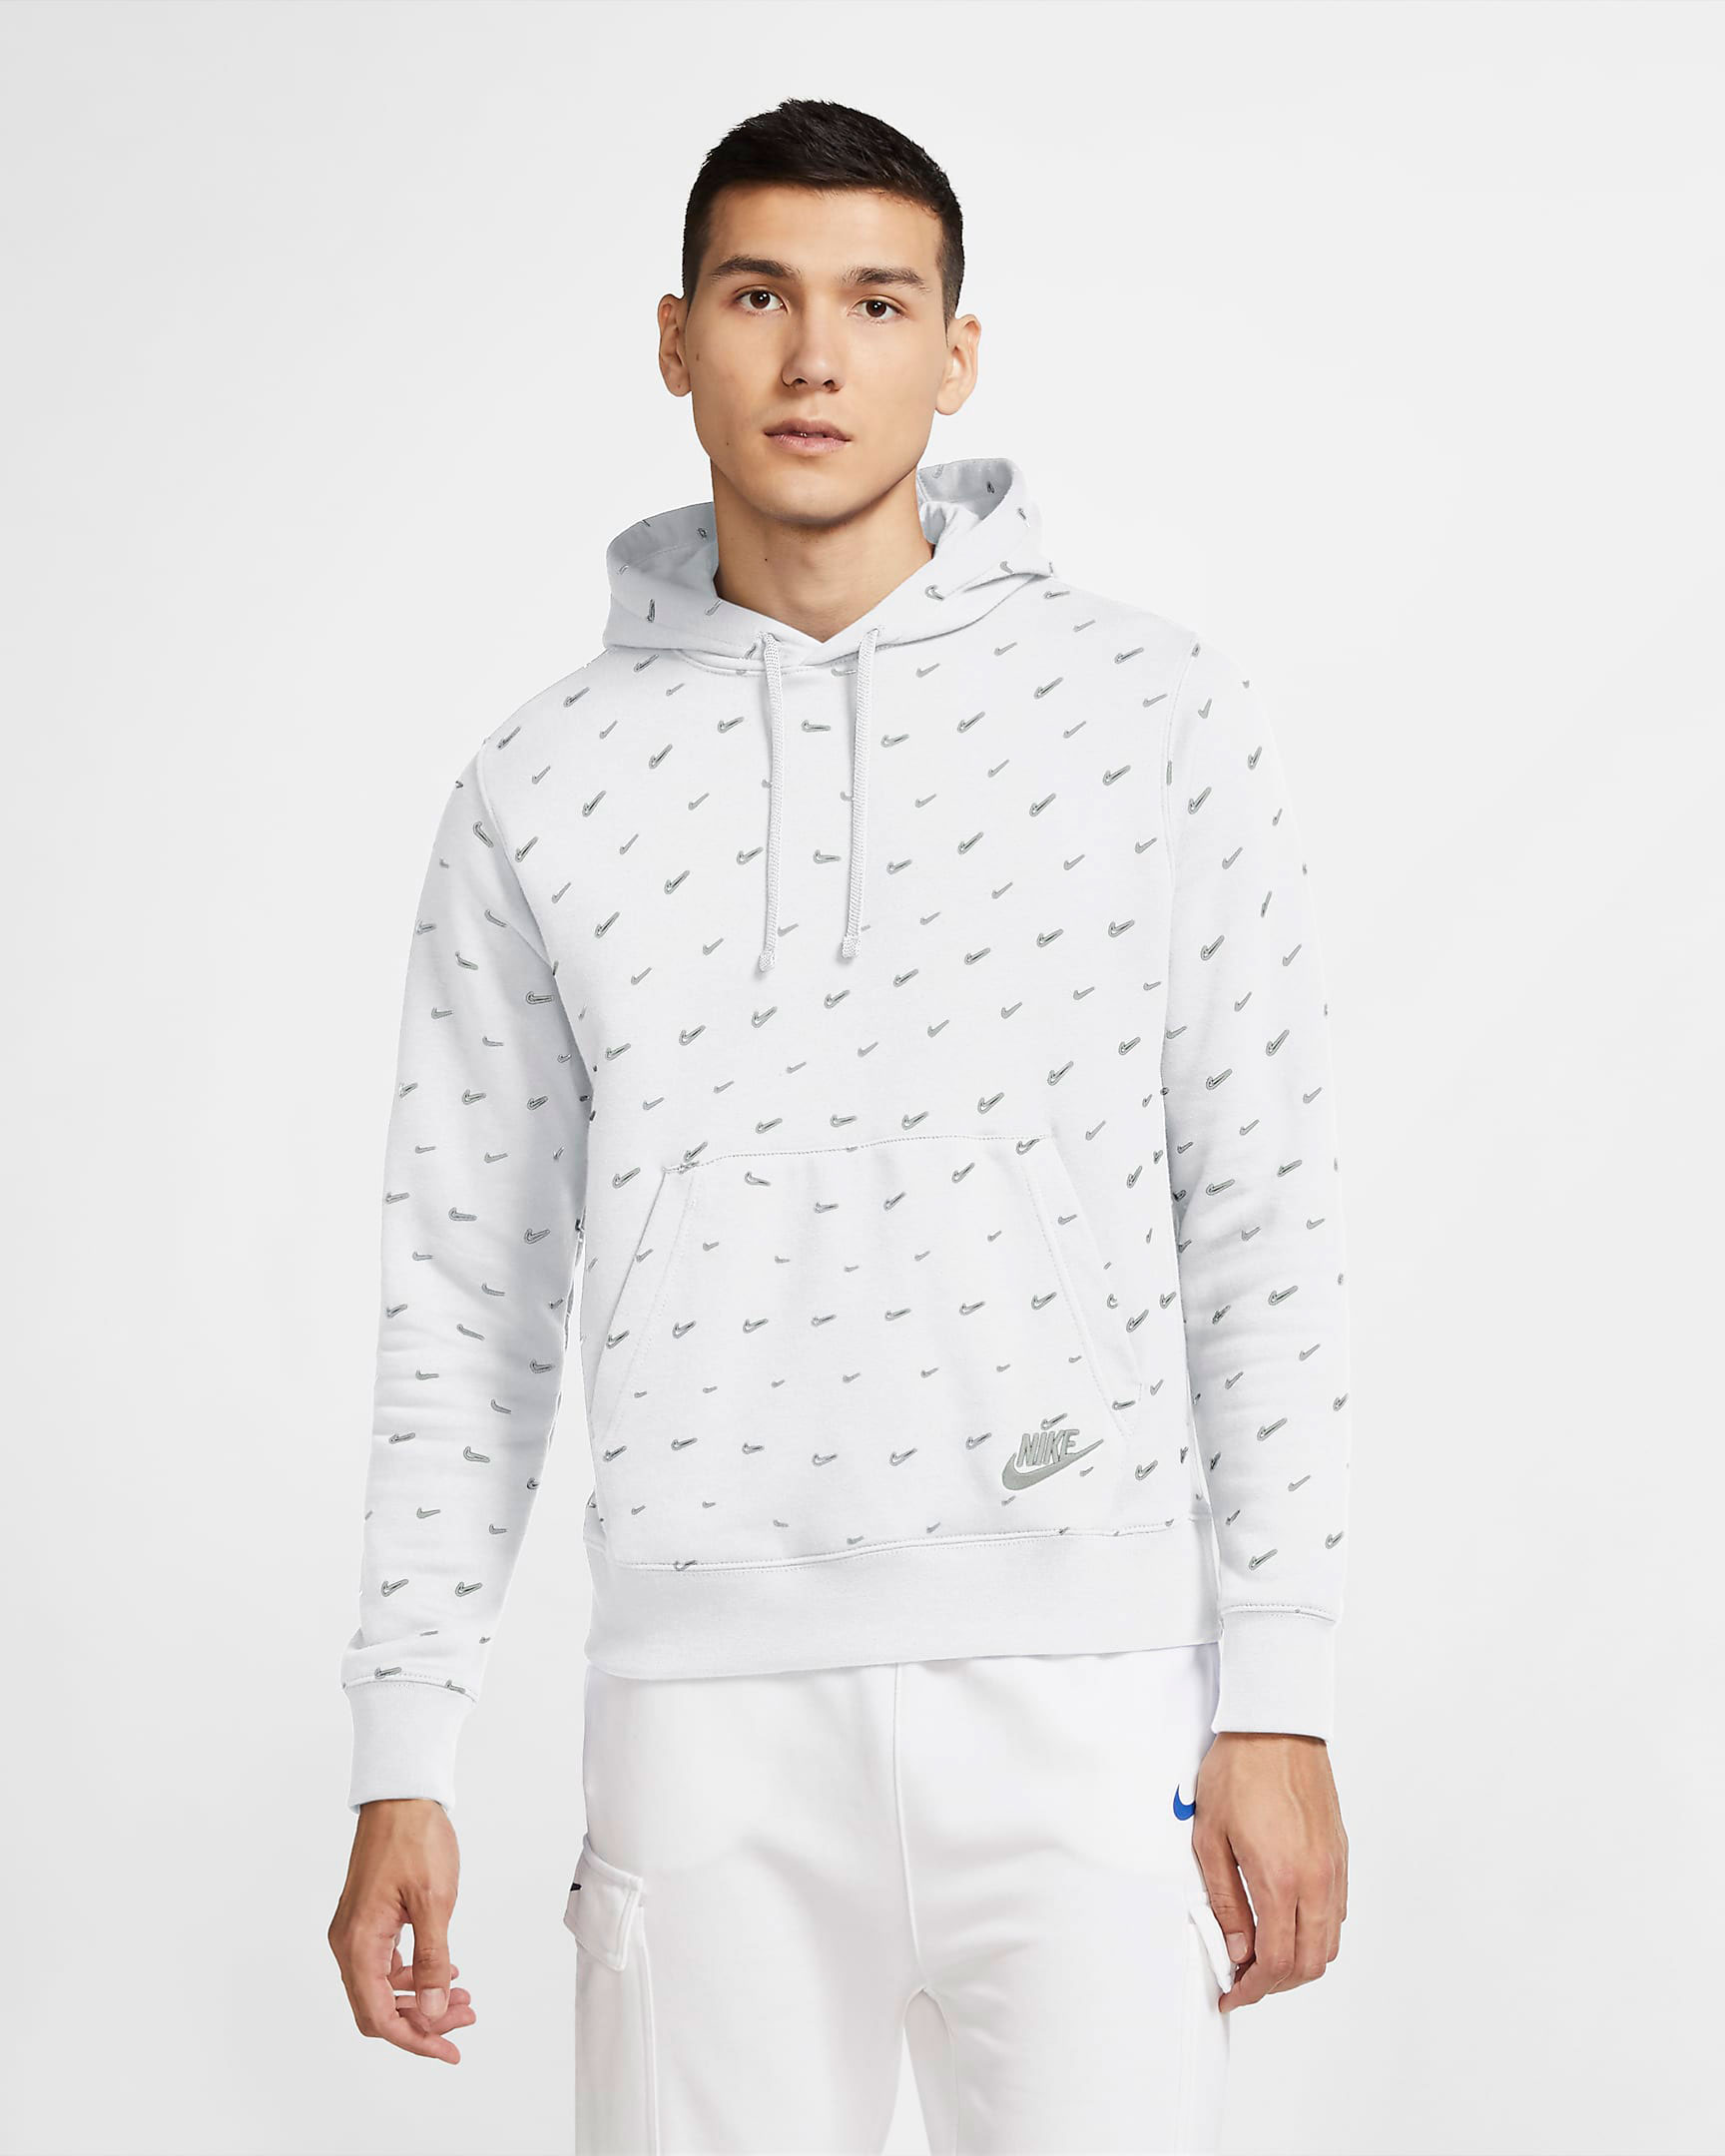 nike-adapt-bb-2-oreo-white-cement-matching-hoodie-1